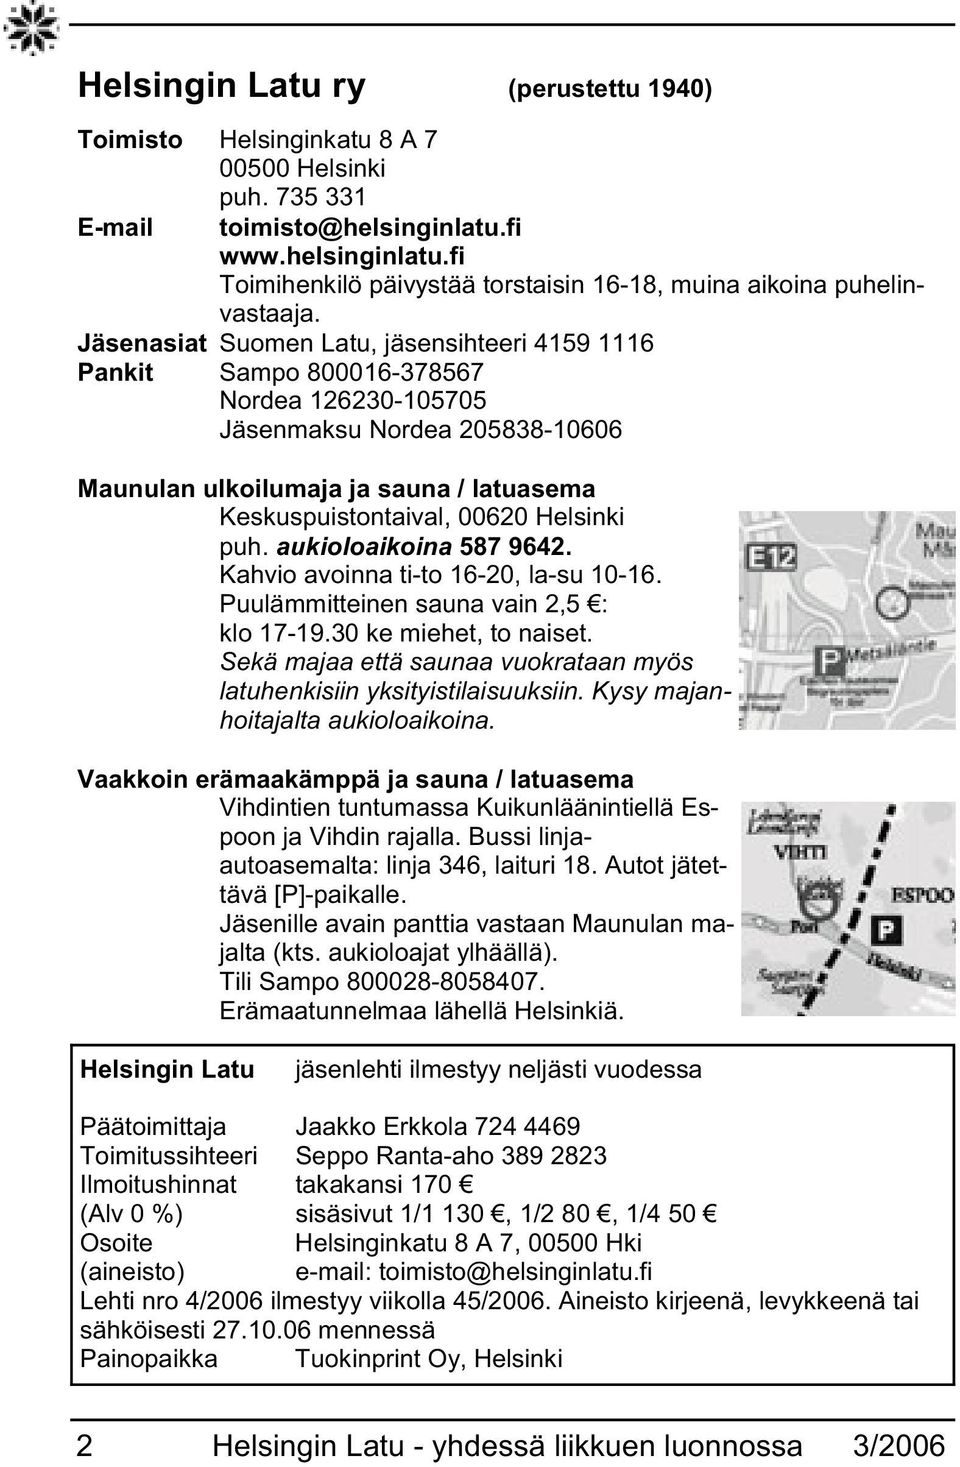 Helsinki puh. aukioloaikoina 587 9642. Kahvio avoinna ti-to 16-20, la-su 10-16. Puulämmitteinen sauna vain 2,5 : klo 17-19.30 ke miehet, to naiset.